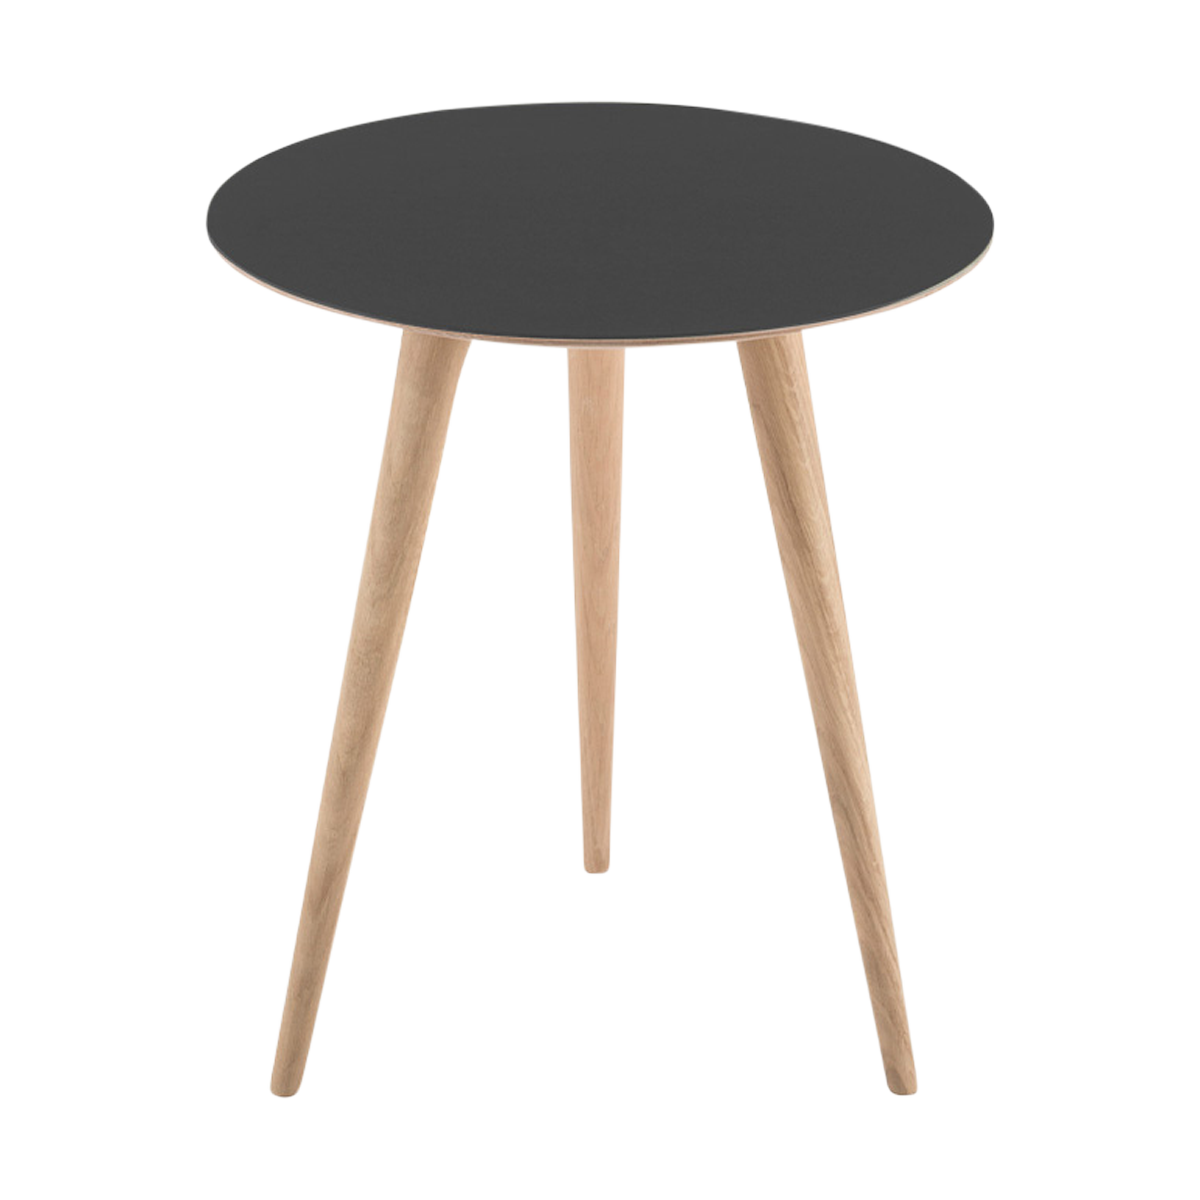 Arp side table houten bijzettafel whitewash - met linoleum tafelblad nero - Ø 45 cm